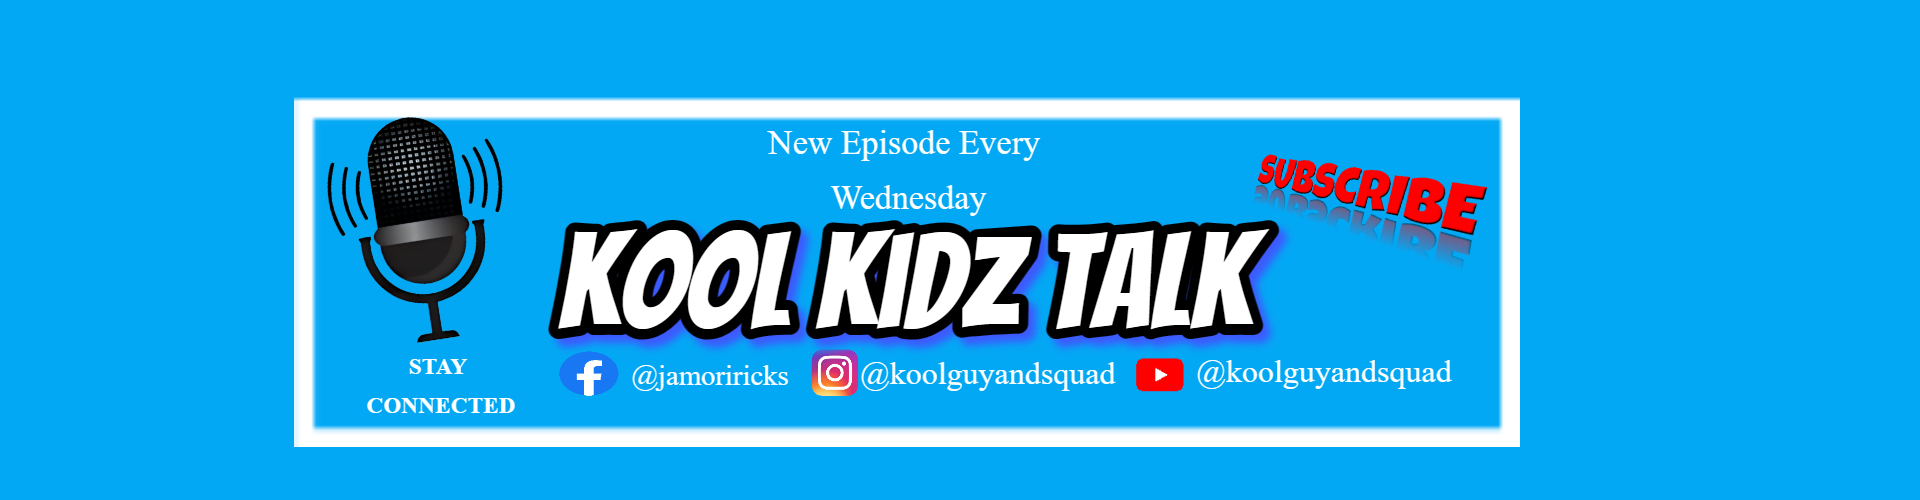 Kool Kidz Talk by Kool Guy & Squad